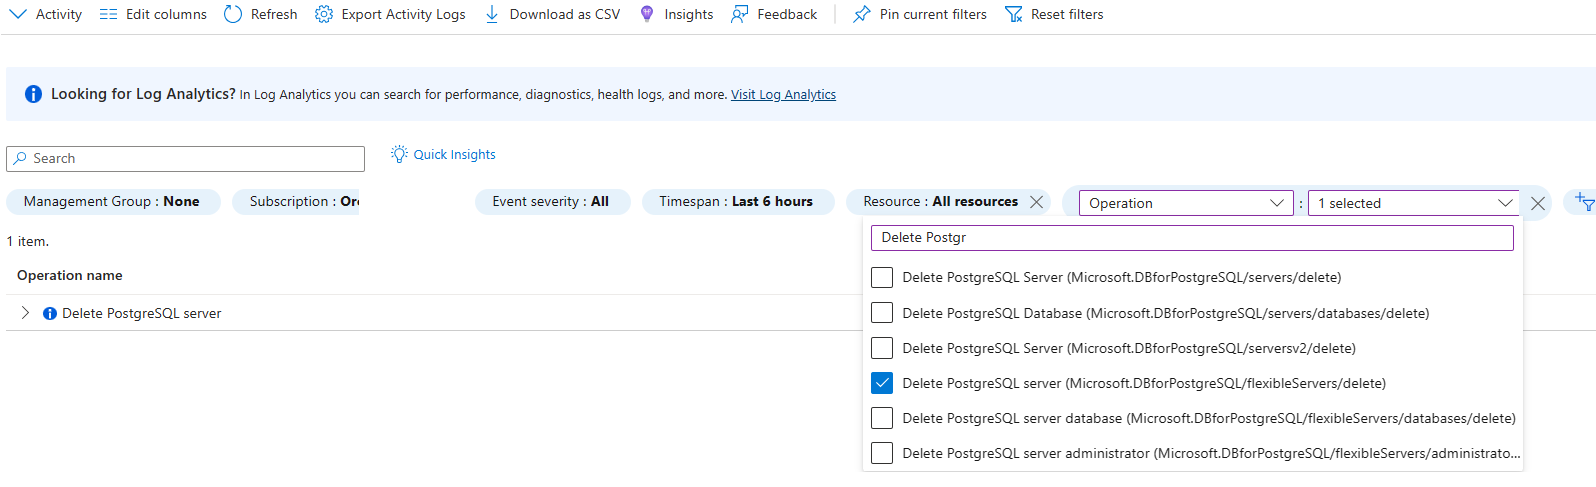 显示针对“删除 PostgreSQL 服务器”操作筛选出的活动日志的屏幕截图。